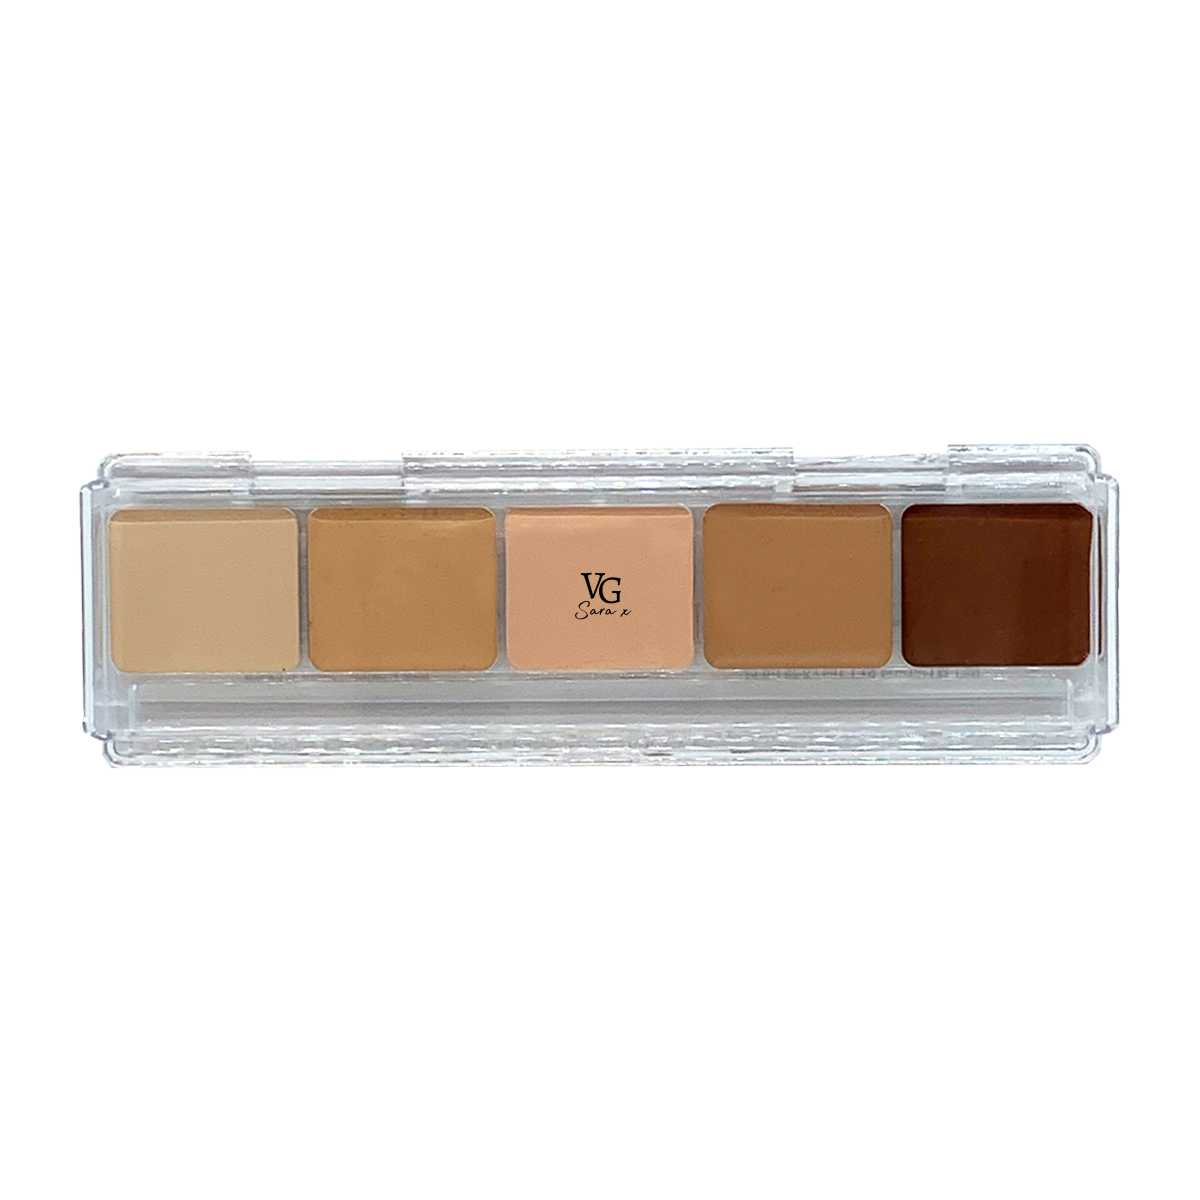 Beige to light brown vegan concealer hues in the V-face palette